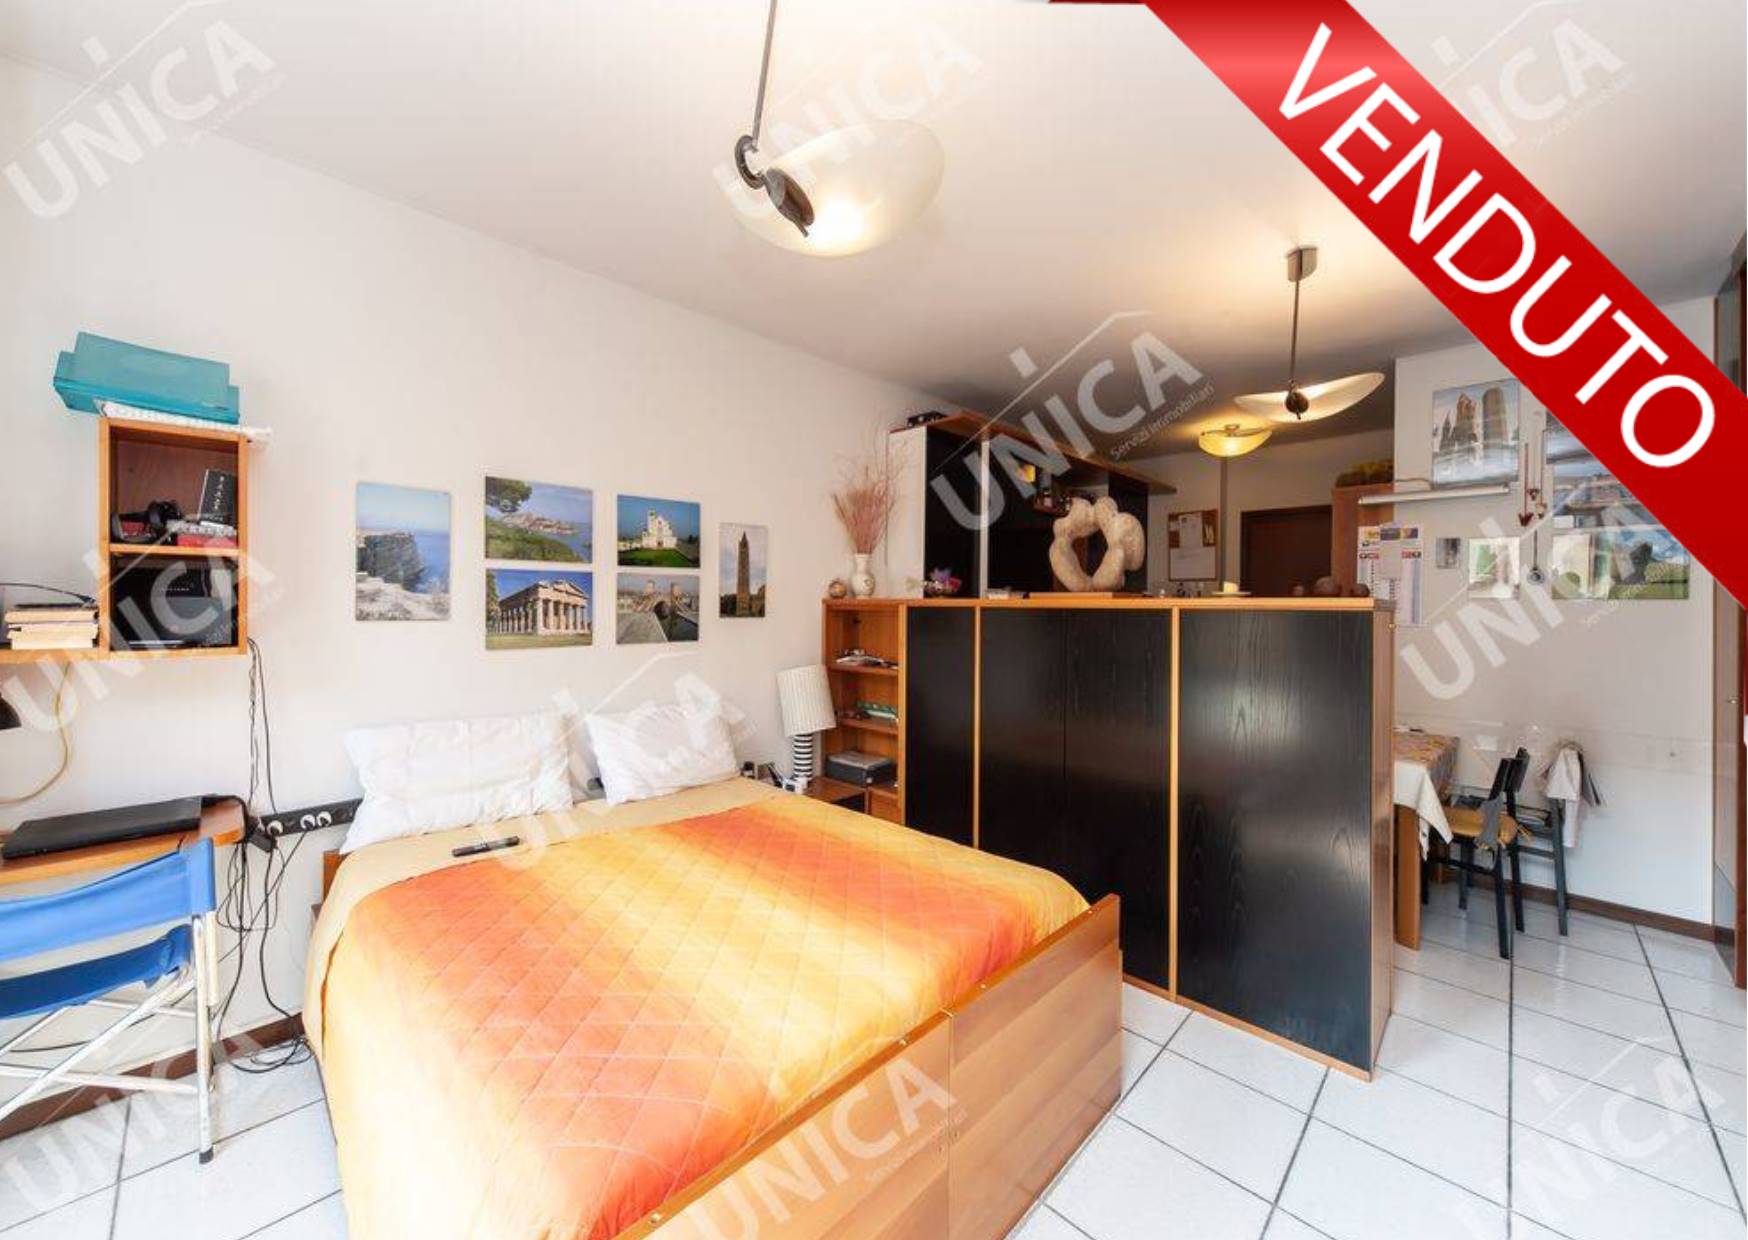 Appartamento in vendita a Fara Gera d'Adda, 1 locali, prezzo € 48.000 | PortaleAgenzieImmobiliari.it